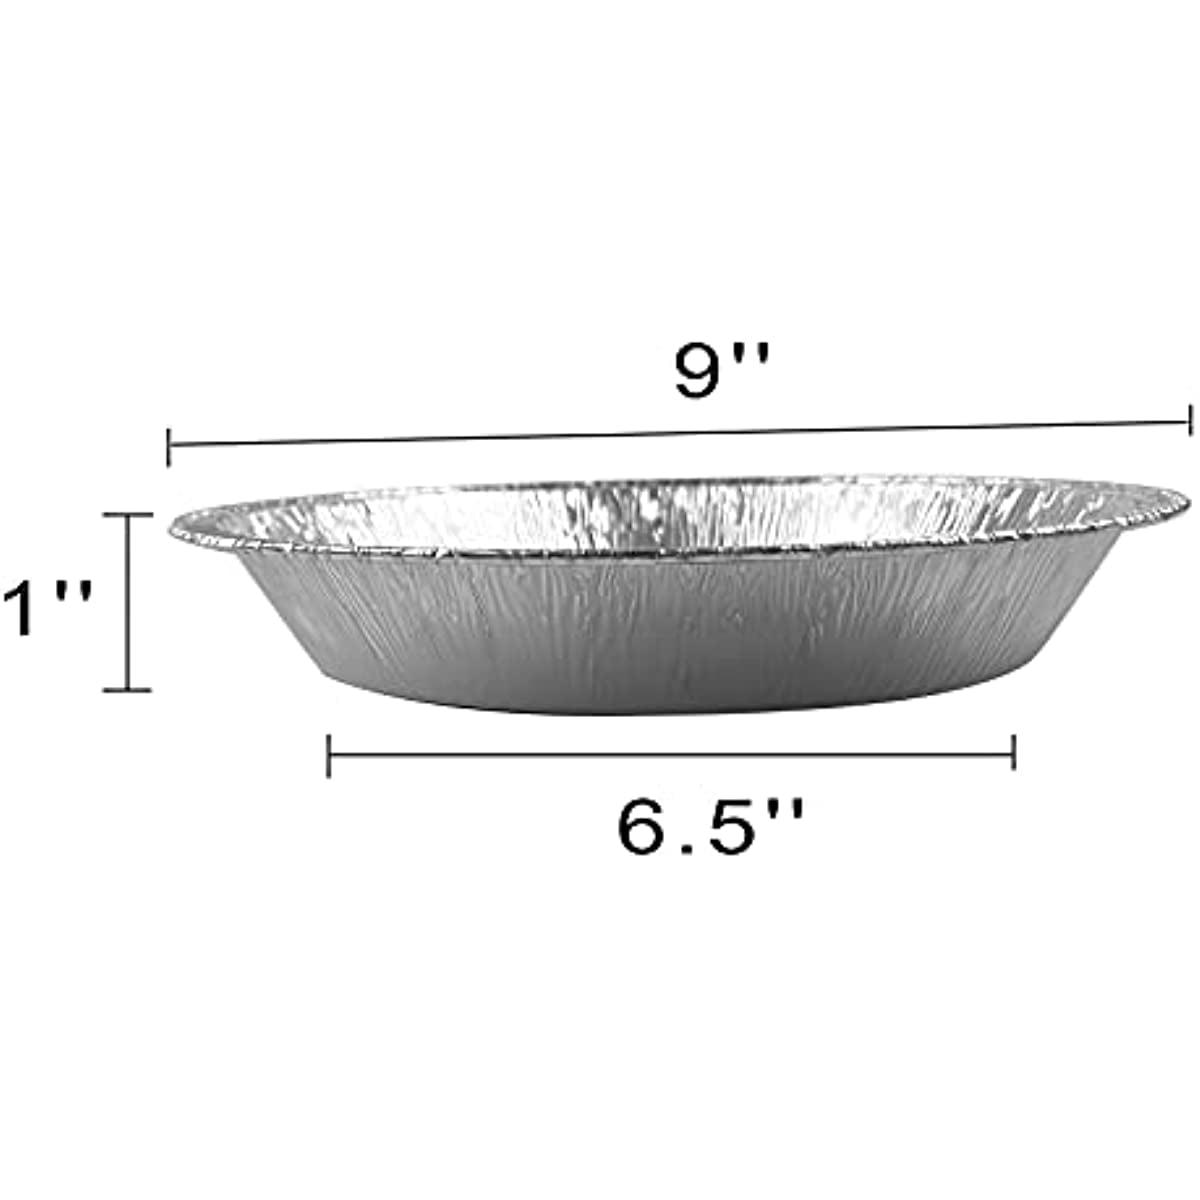 9 Disposable Aluminum Foil Pie Pan - Medium Depth #901